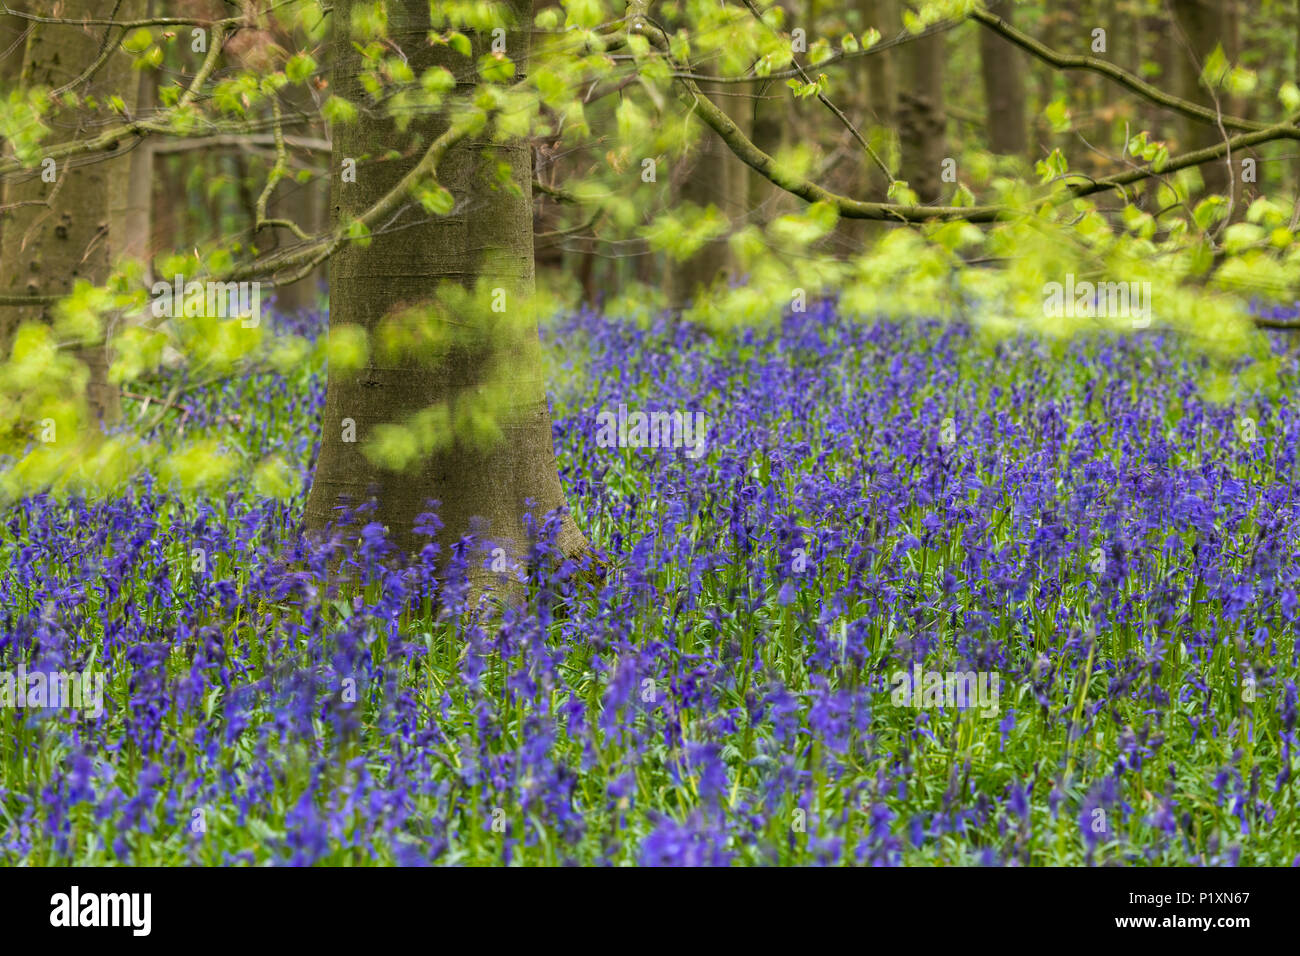 Bluebells Flowering crea un meraviglioso colorato tappeto blu sotto gli alberi in primavera - Middleton Woods, Ilkley, West Yorkshire, Inghilterra, Regno Unito. Foto Stock